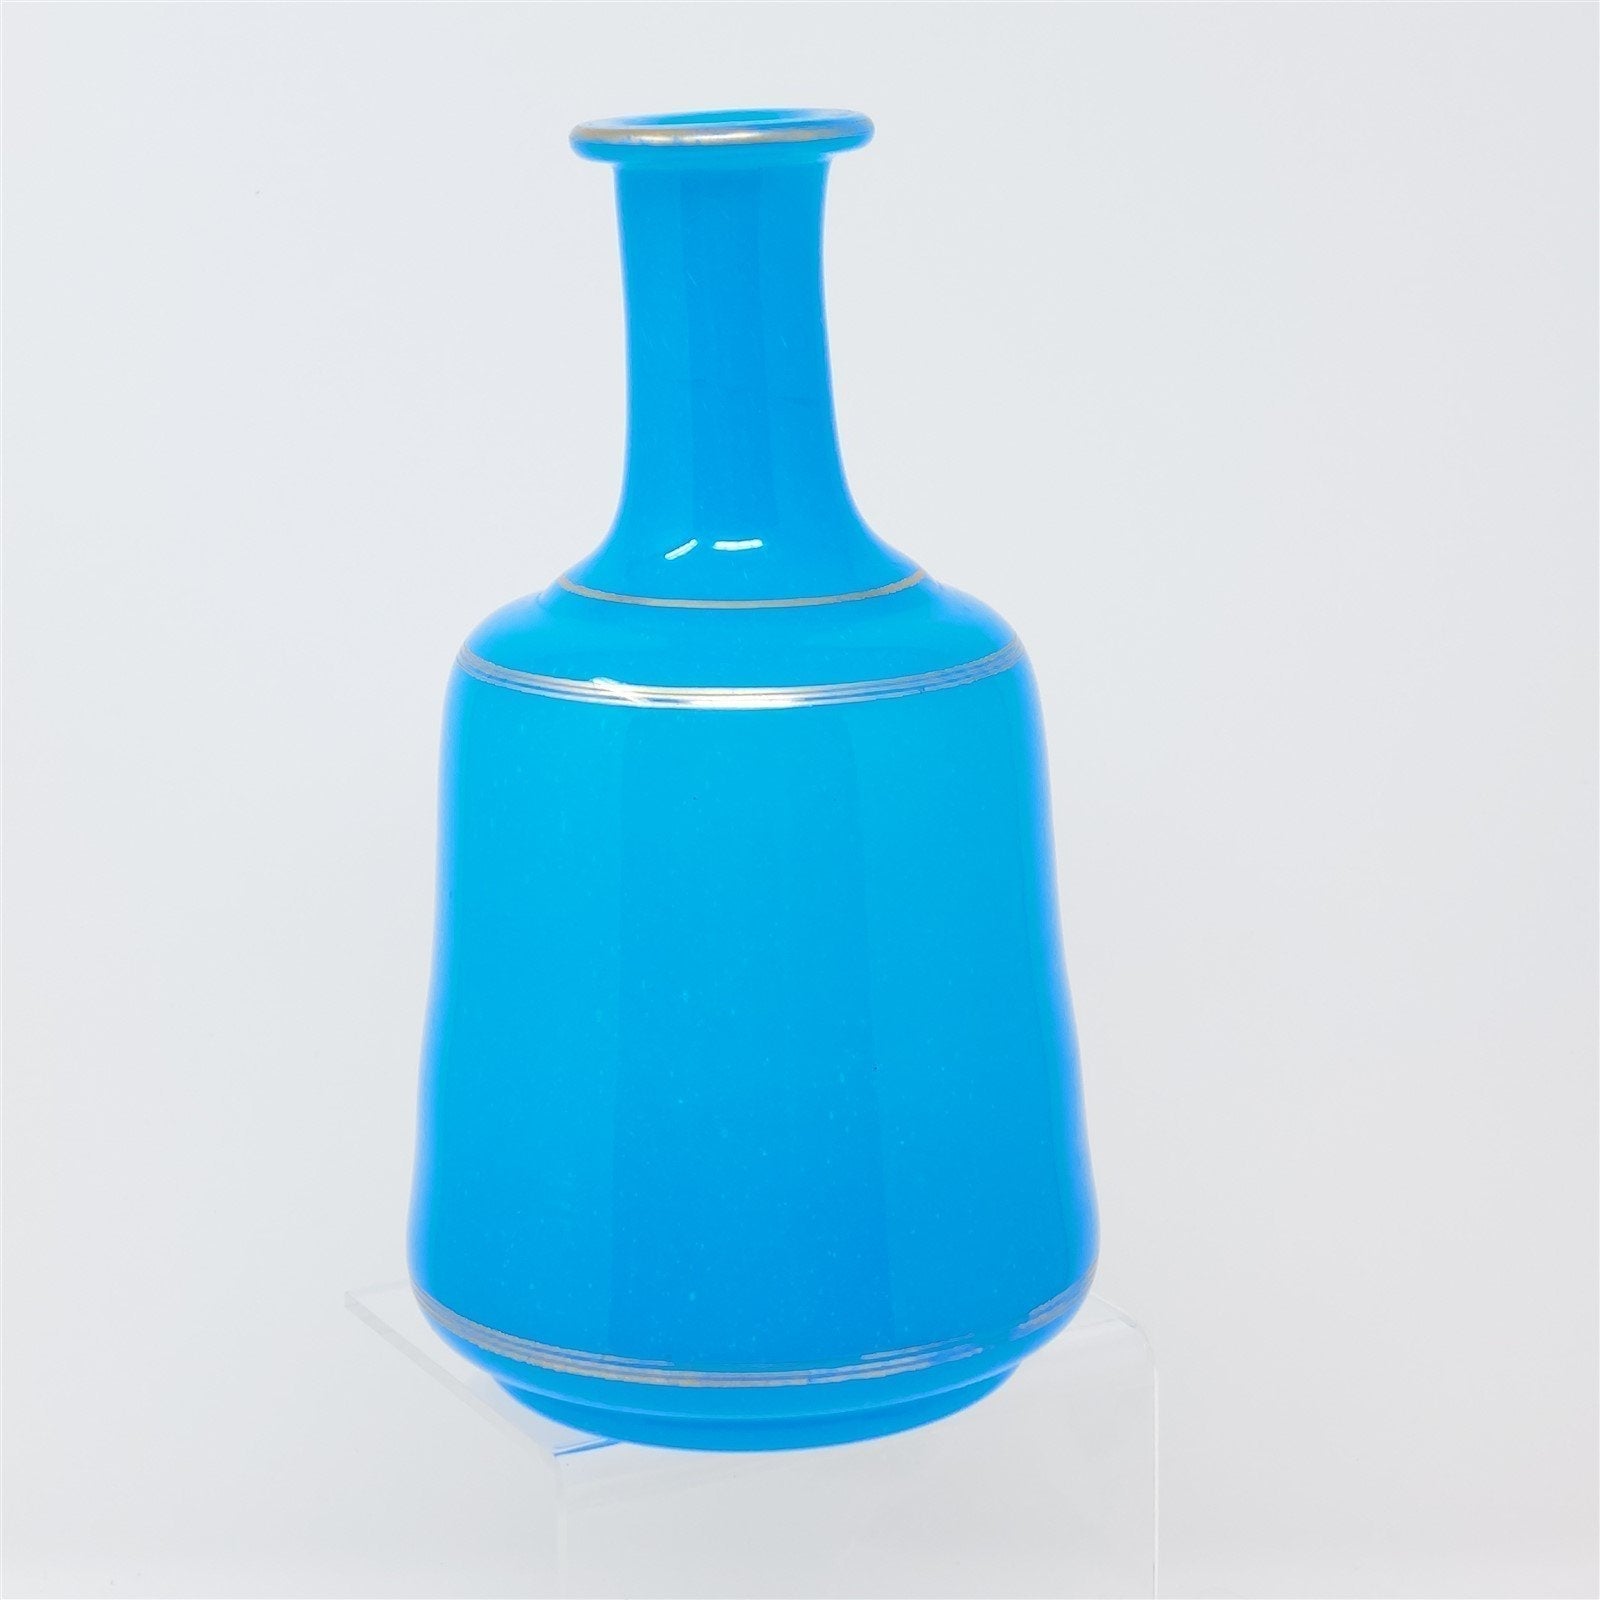 Glass Bottle Vase Hand Blown Pontil Mark Blue With Gold Trim Vintage Decor 7"